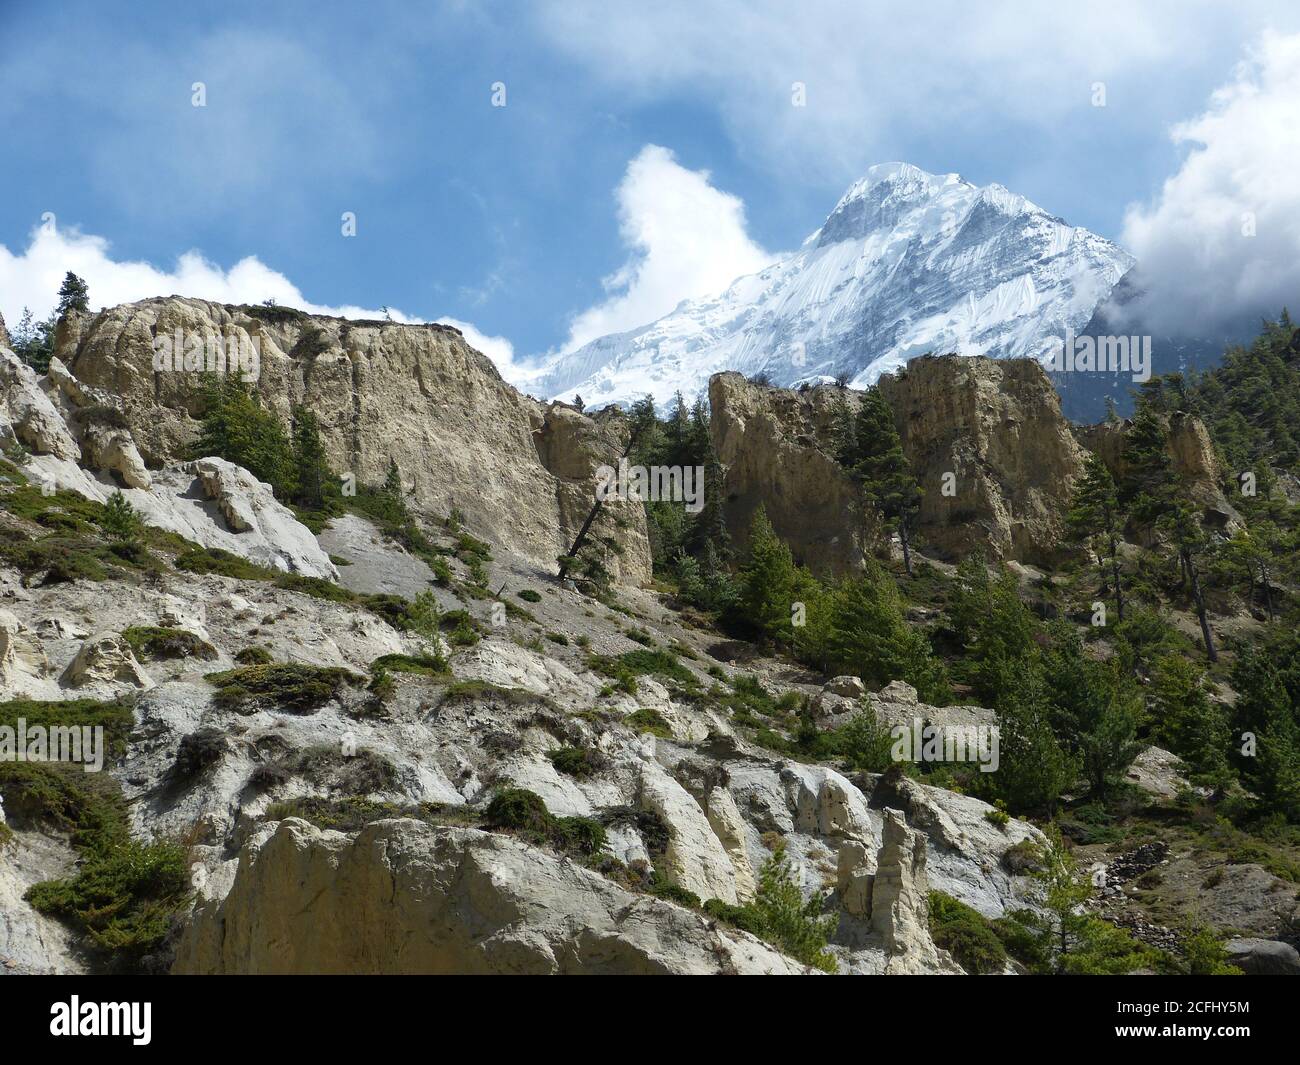 Pittoresque montagne enneigée de l'Himalaya Nilgiri. Paysage rocheux calcaire blanc. Forêt de conifères sur les contreforts de l'himalaya. Royaume interdit Mustang, Népal. Banque D'Images